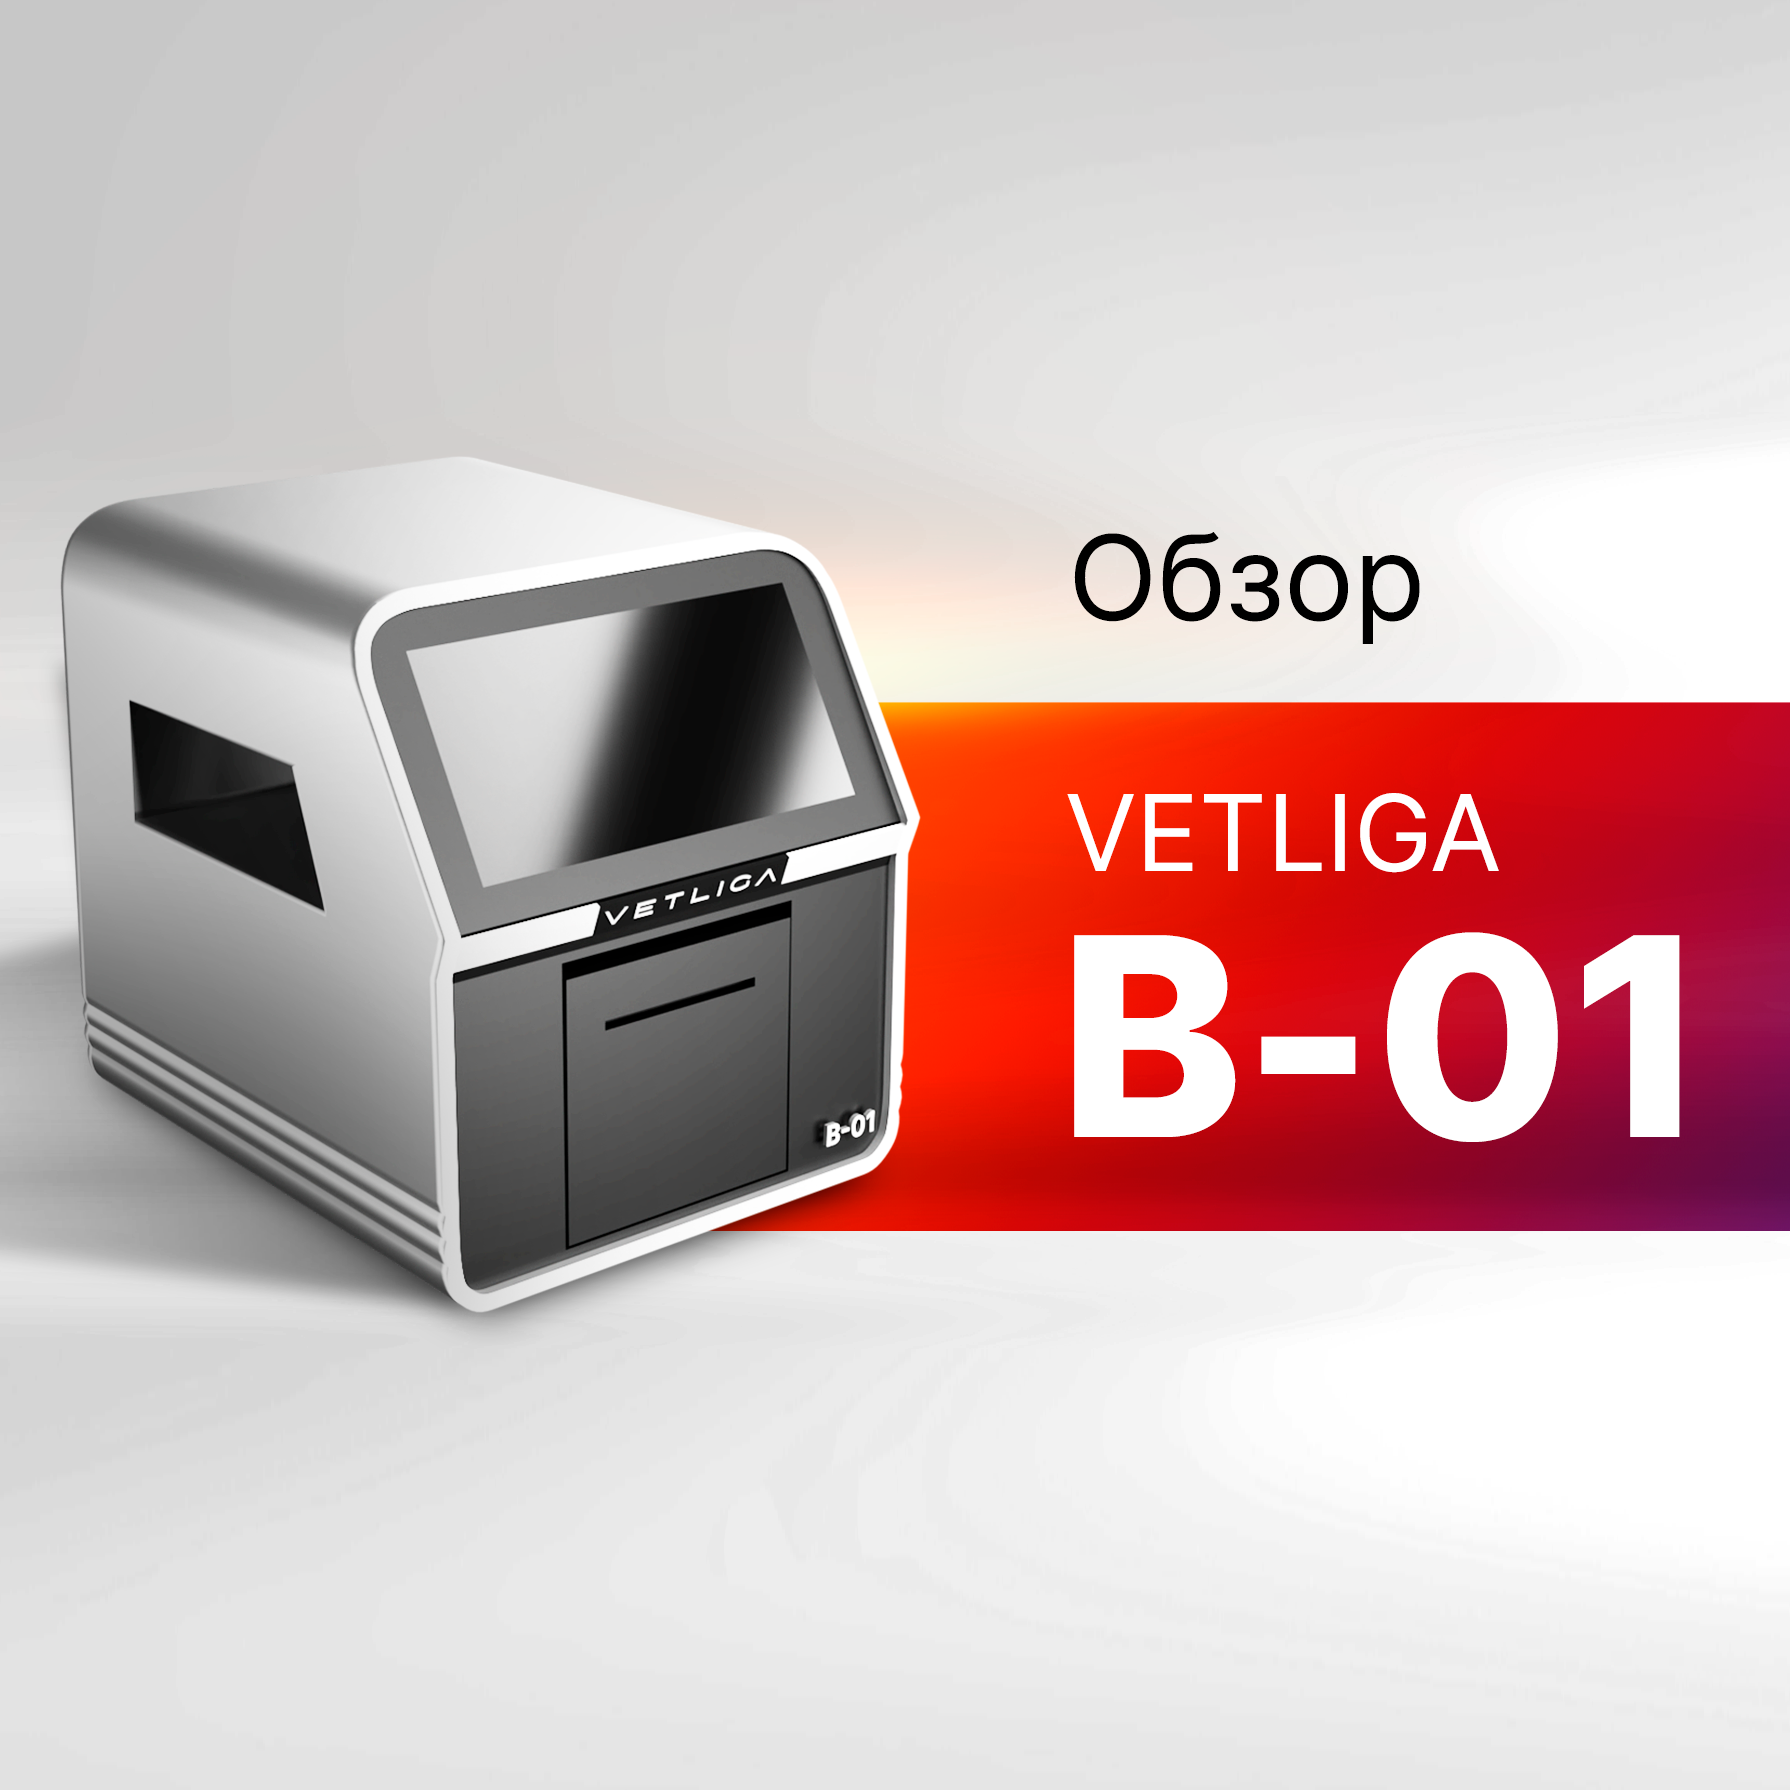 Обзор ветеринарного биохимического анализатора VETLIGA B-01